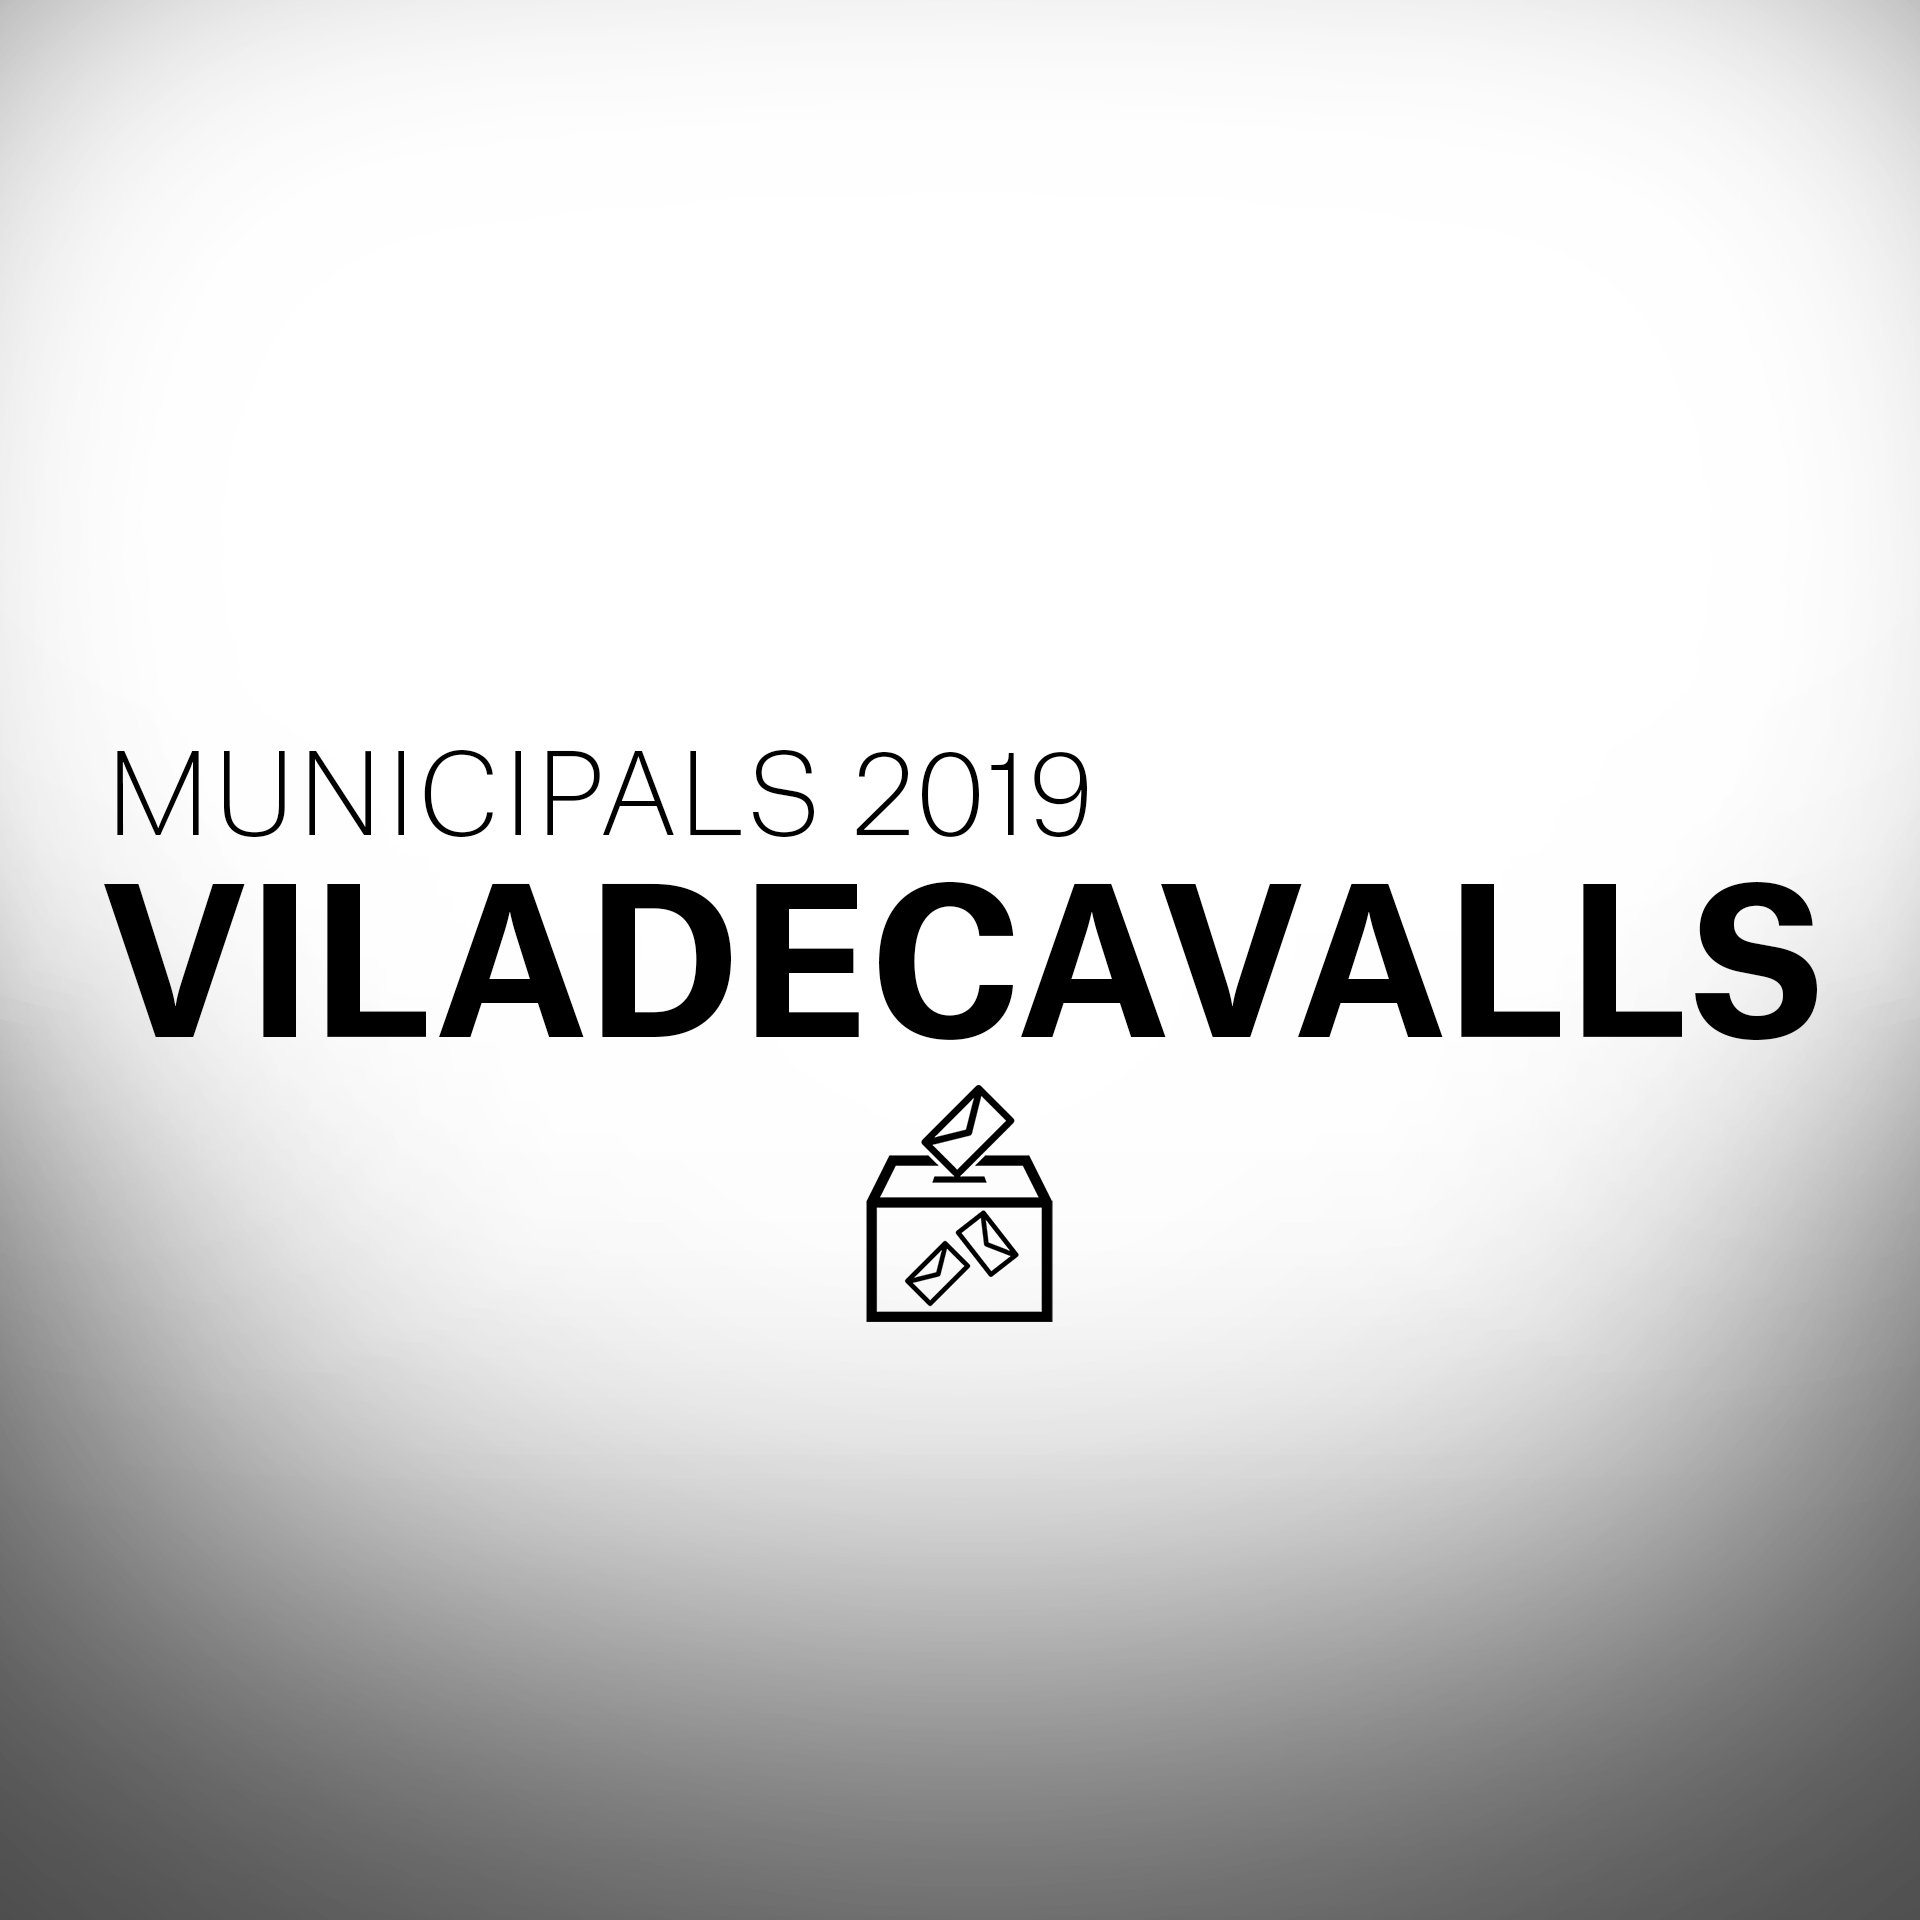 Què passarà a les eleccions municipals a Viladecavalls?